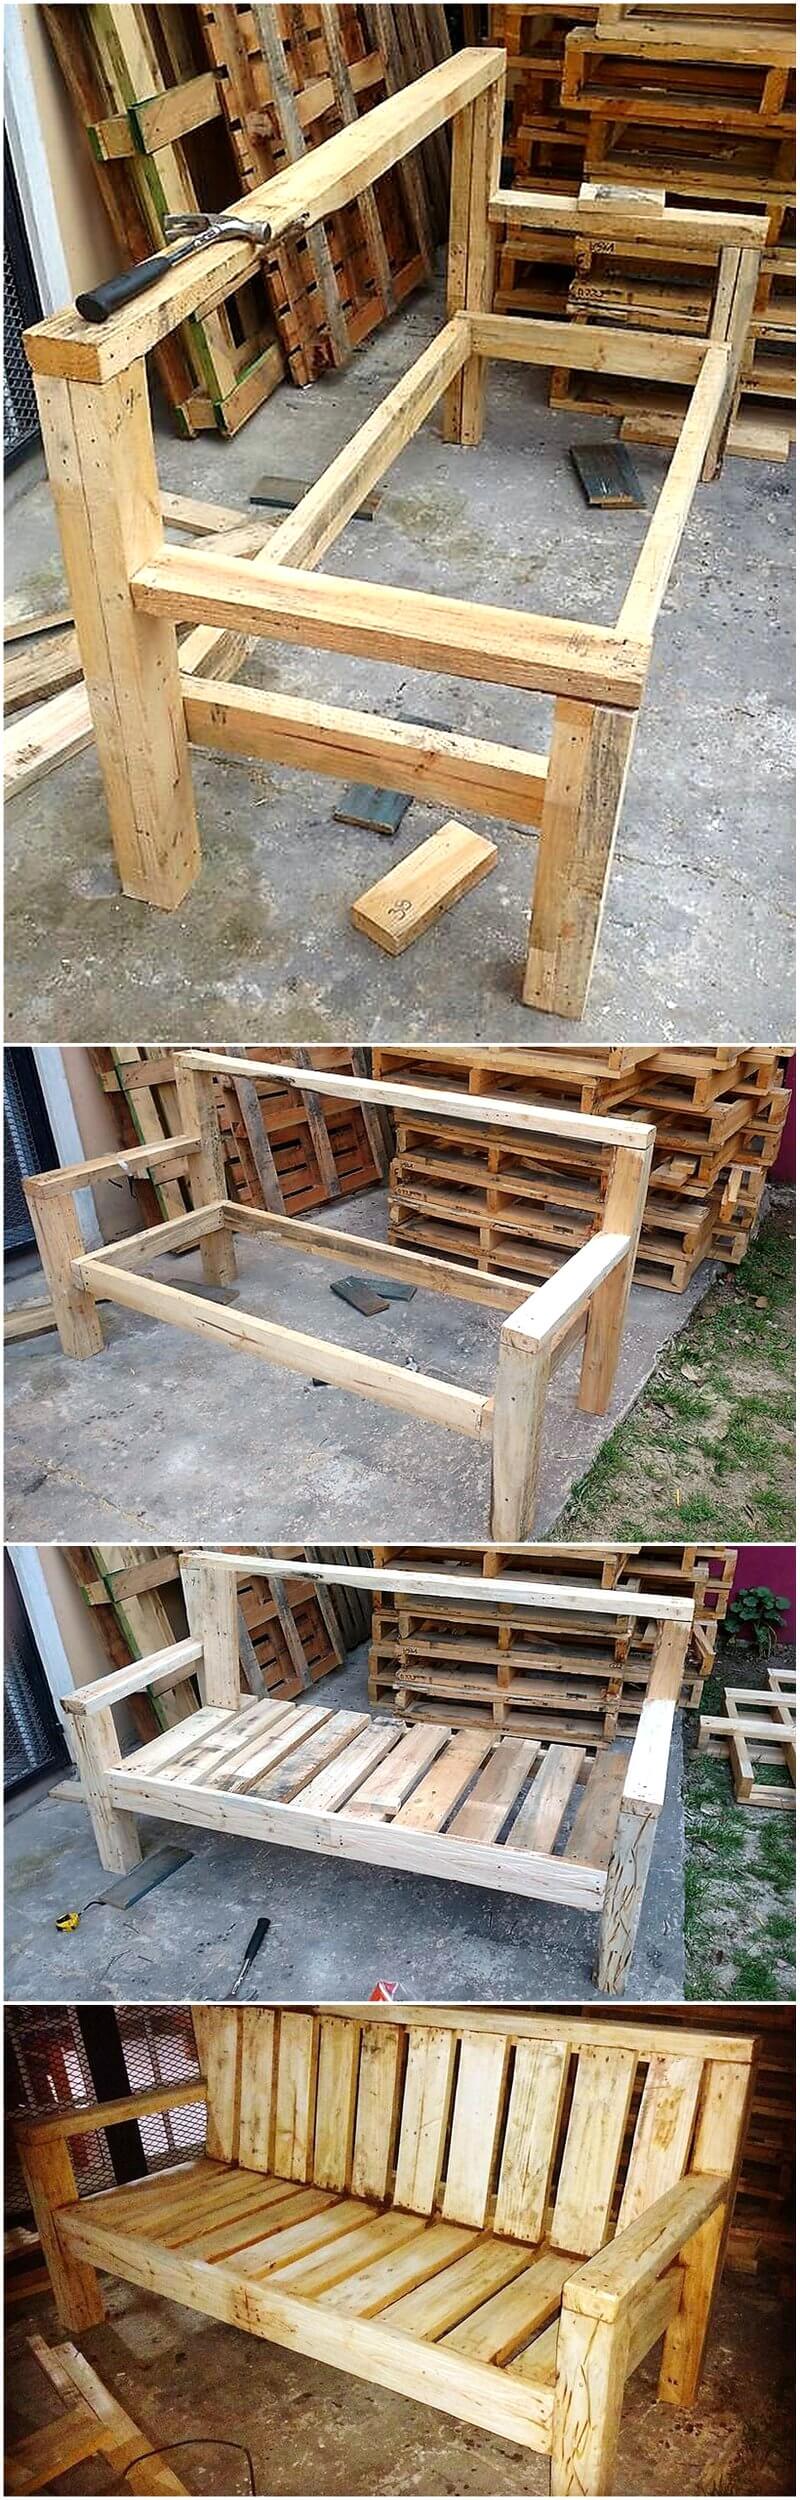 Diy Recycled Wood Pallet Bench Plan Wood Pallet Furniture